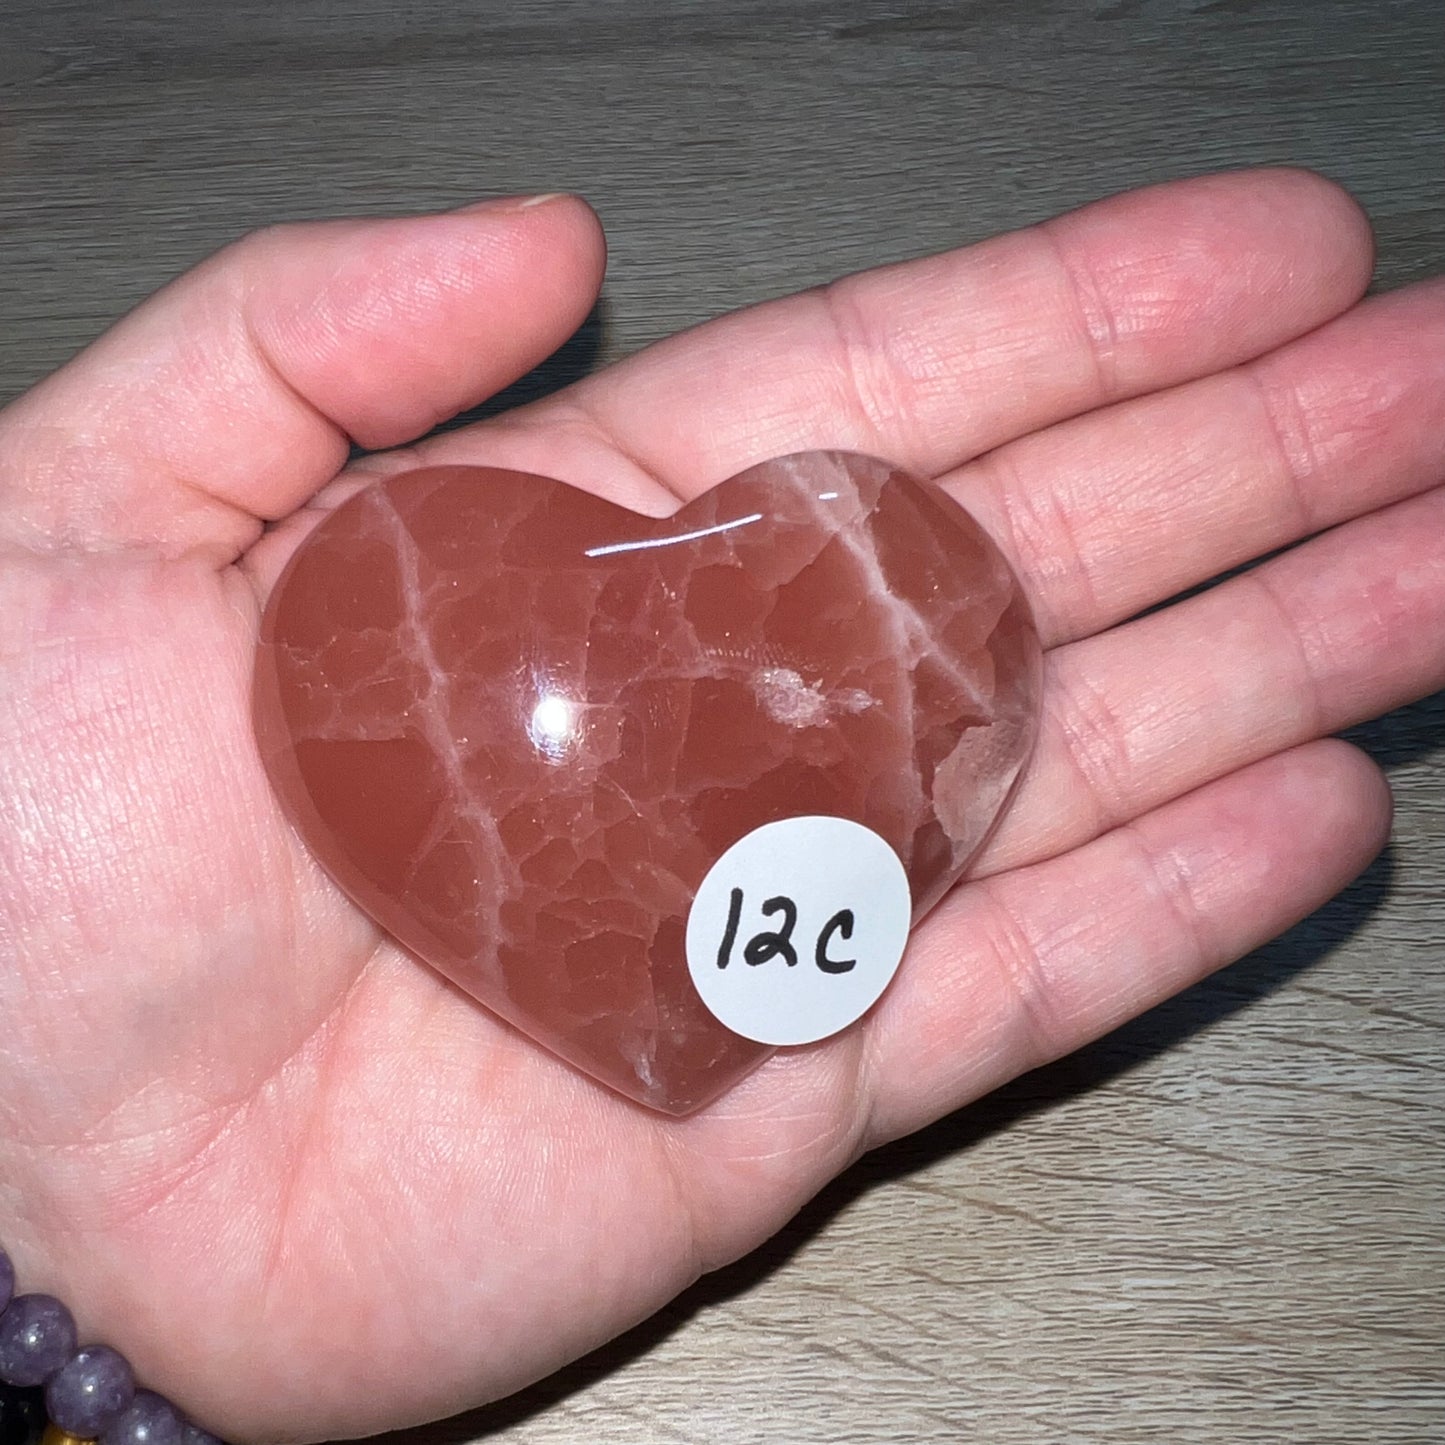 Rose Calcite Heart 12C